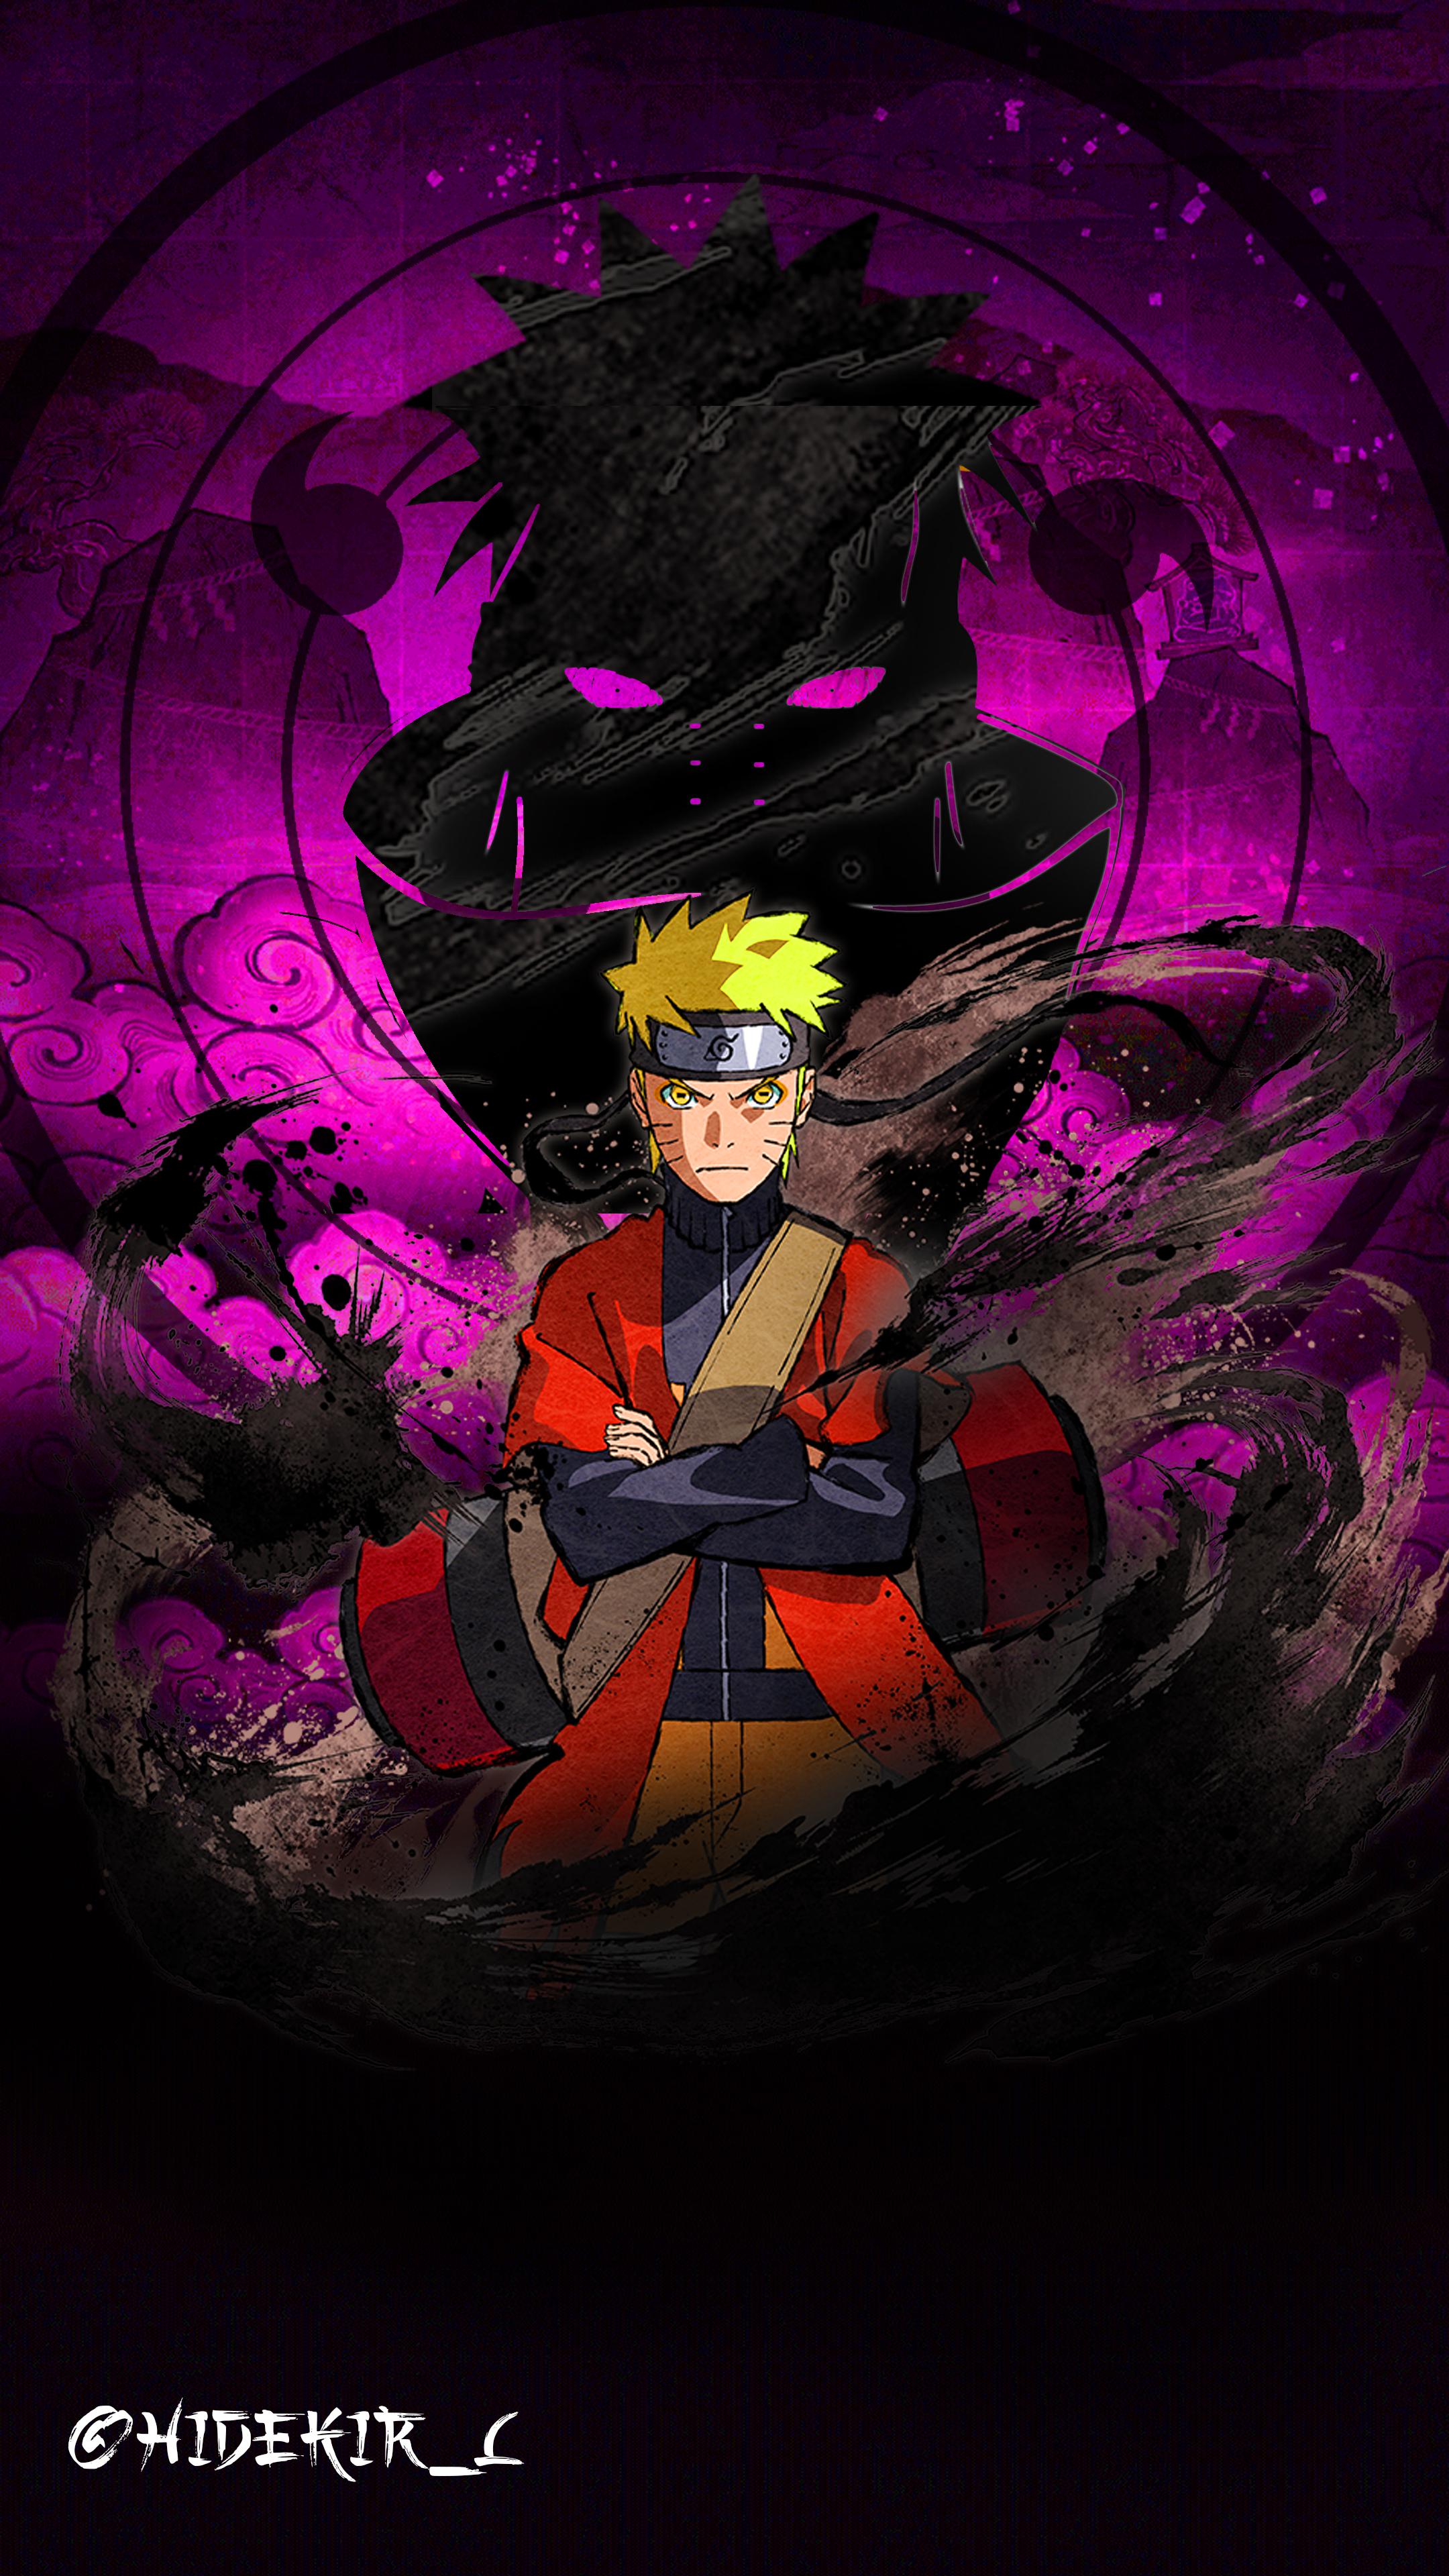 Gambar Wallpaper Naruto Keren Terbaru gambar ke 2